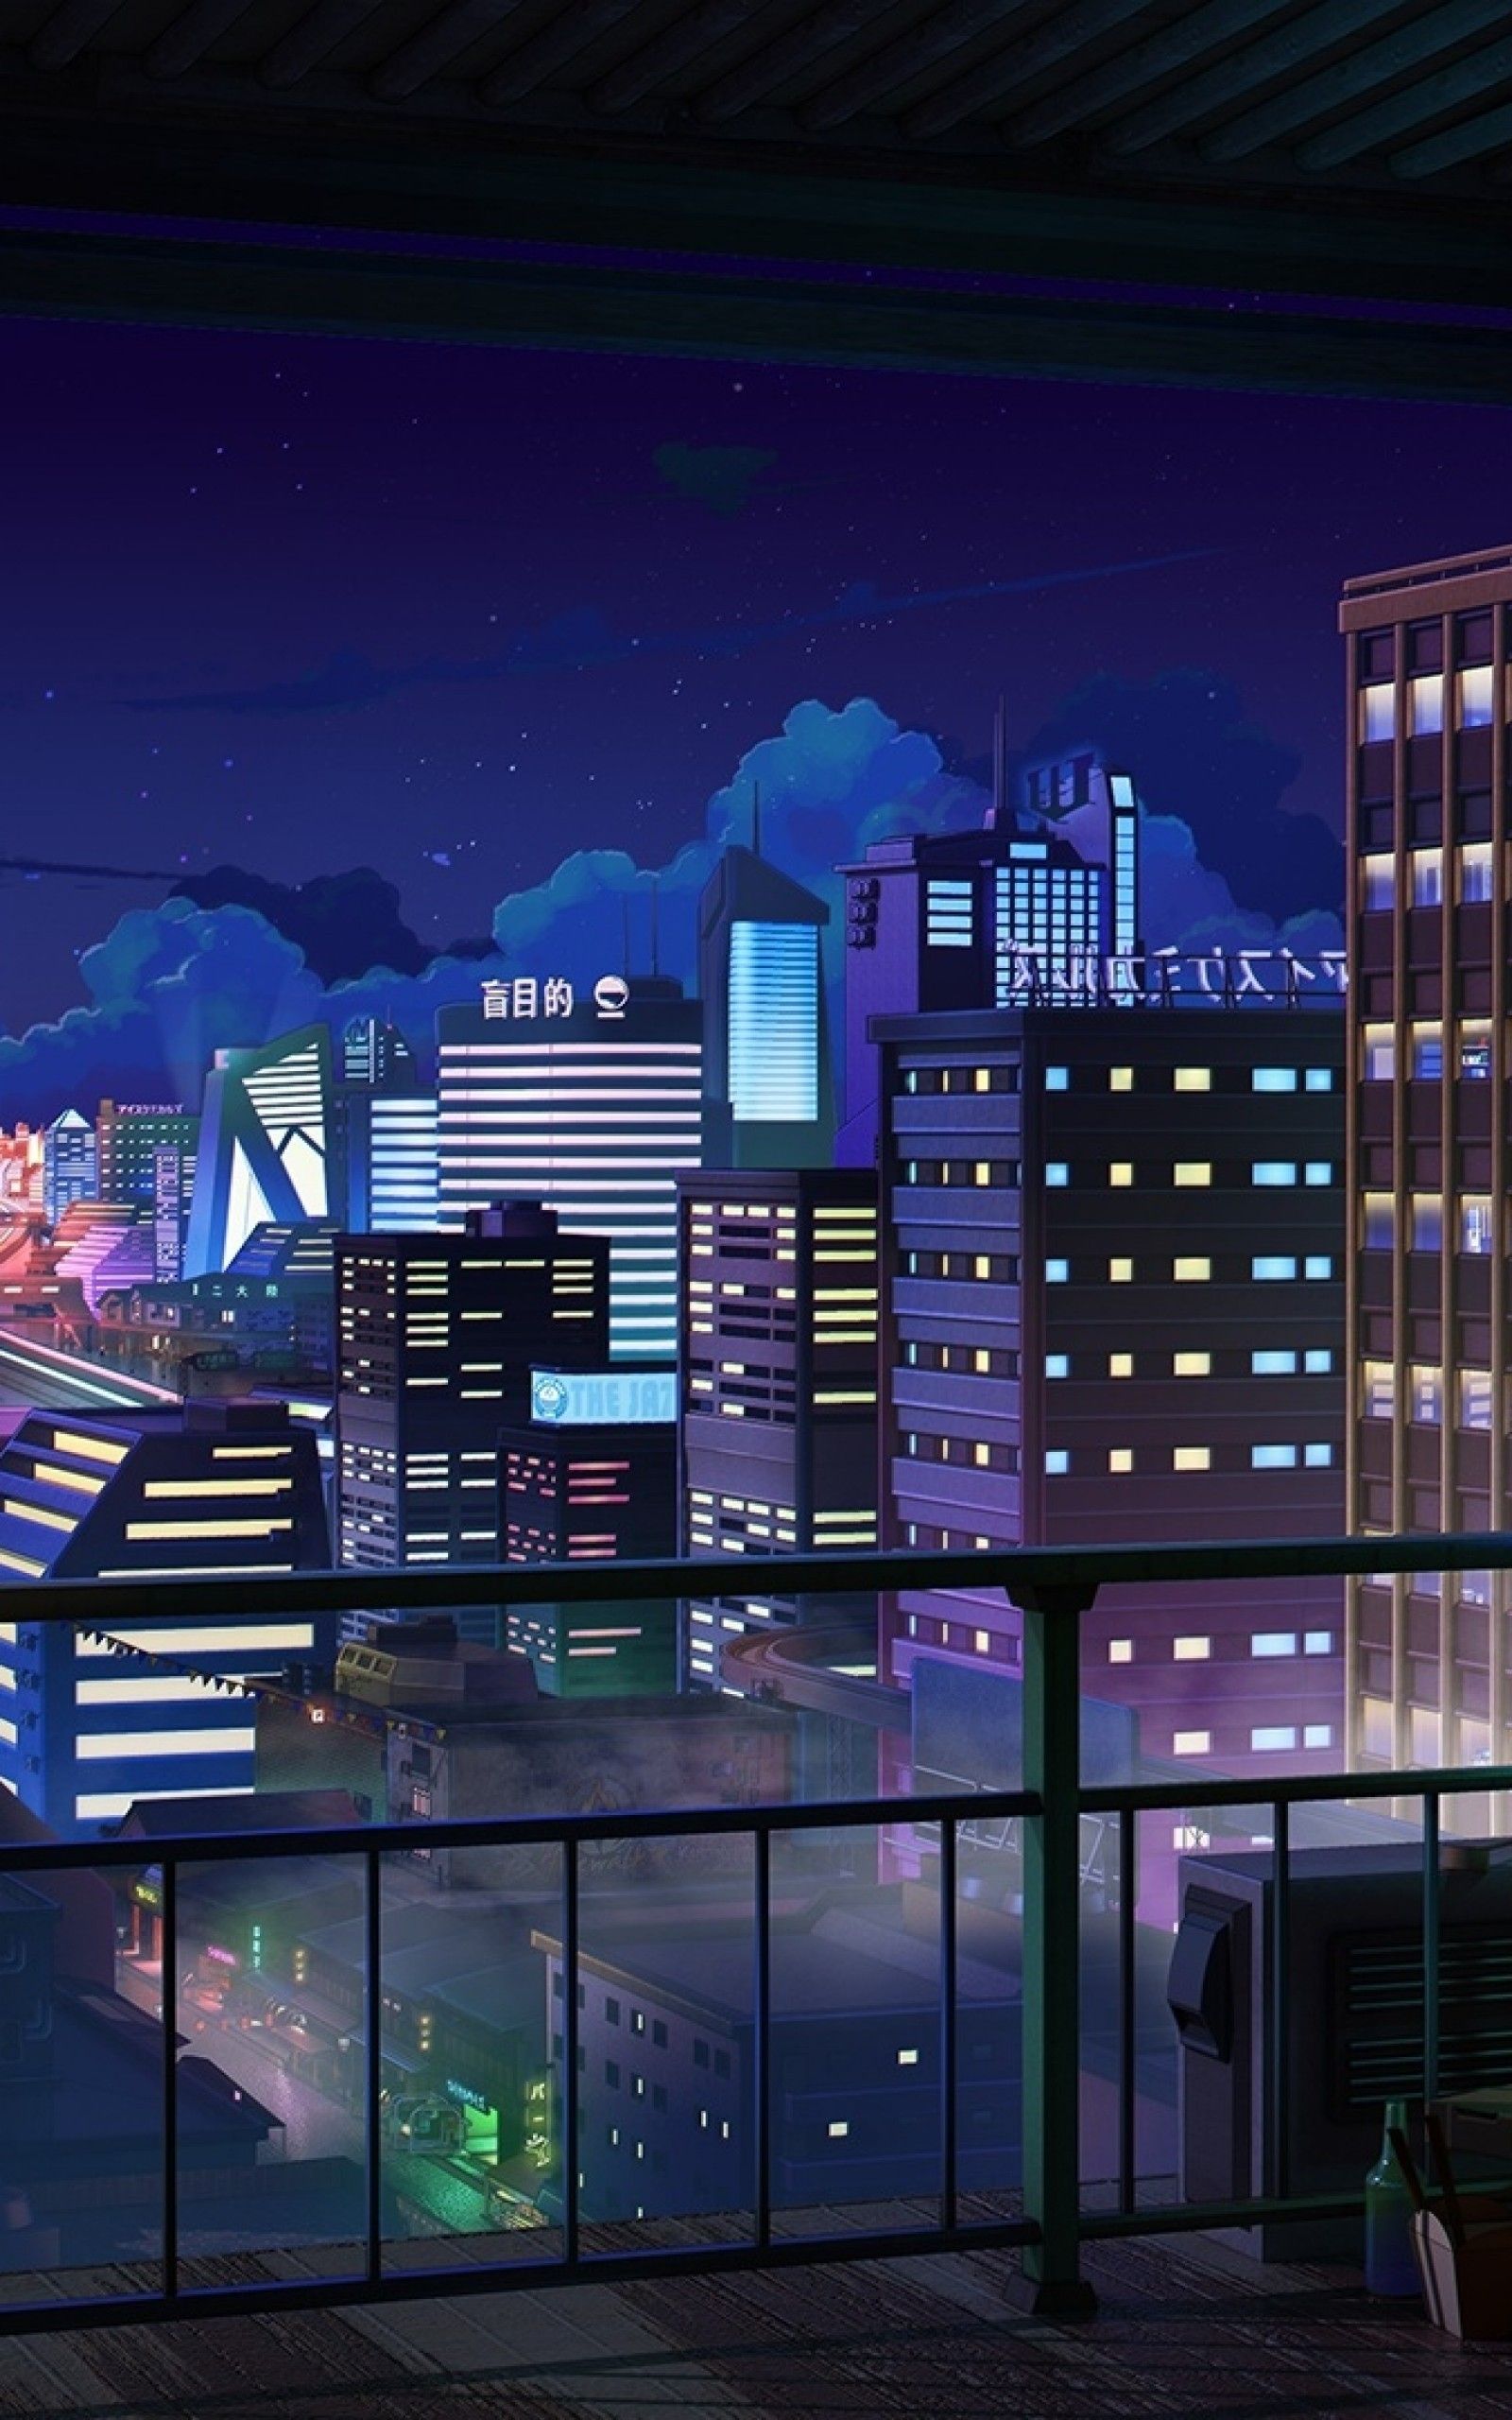 Anime Cityscape, Night, Buildings, Balcony, Stars, Fi City